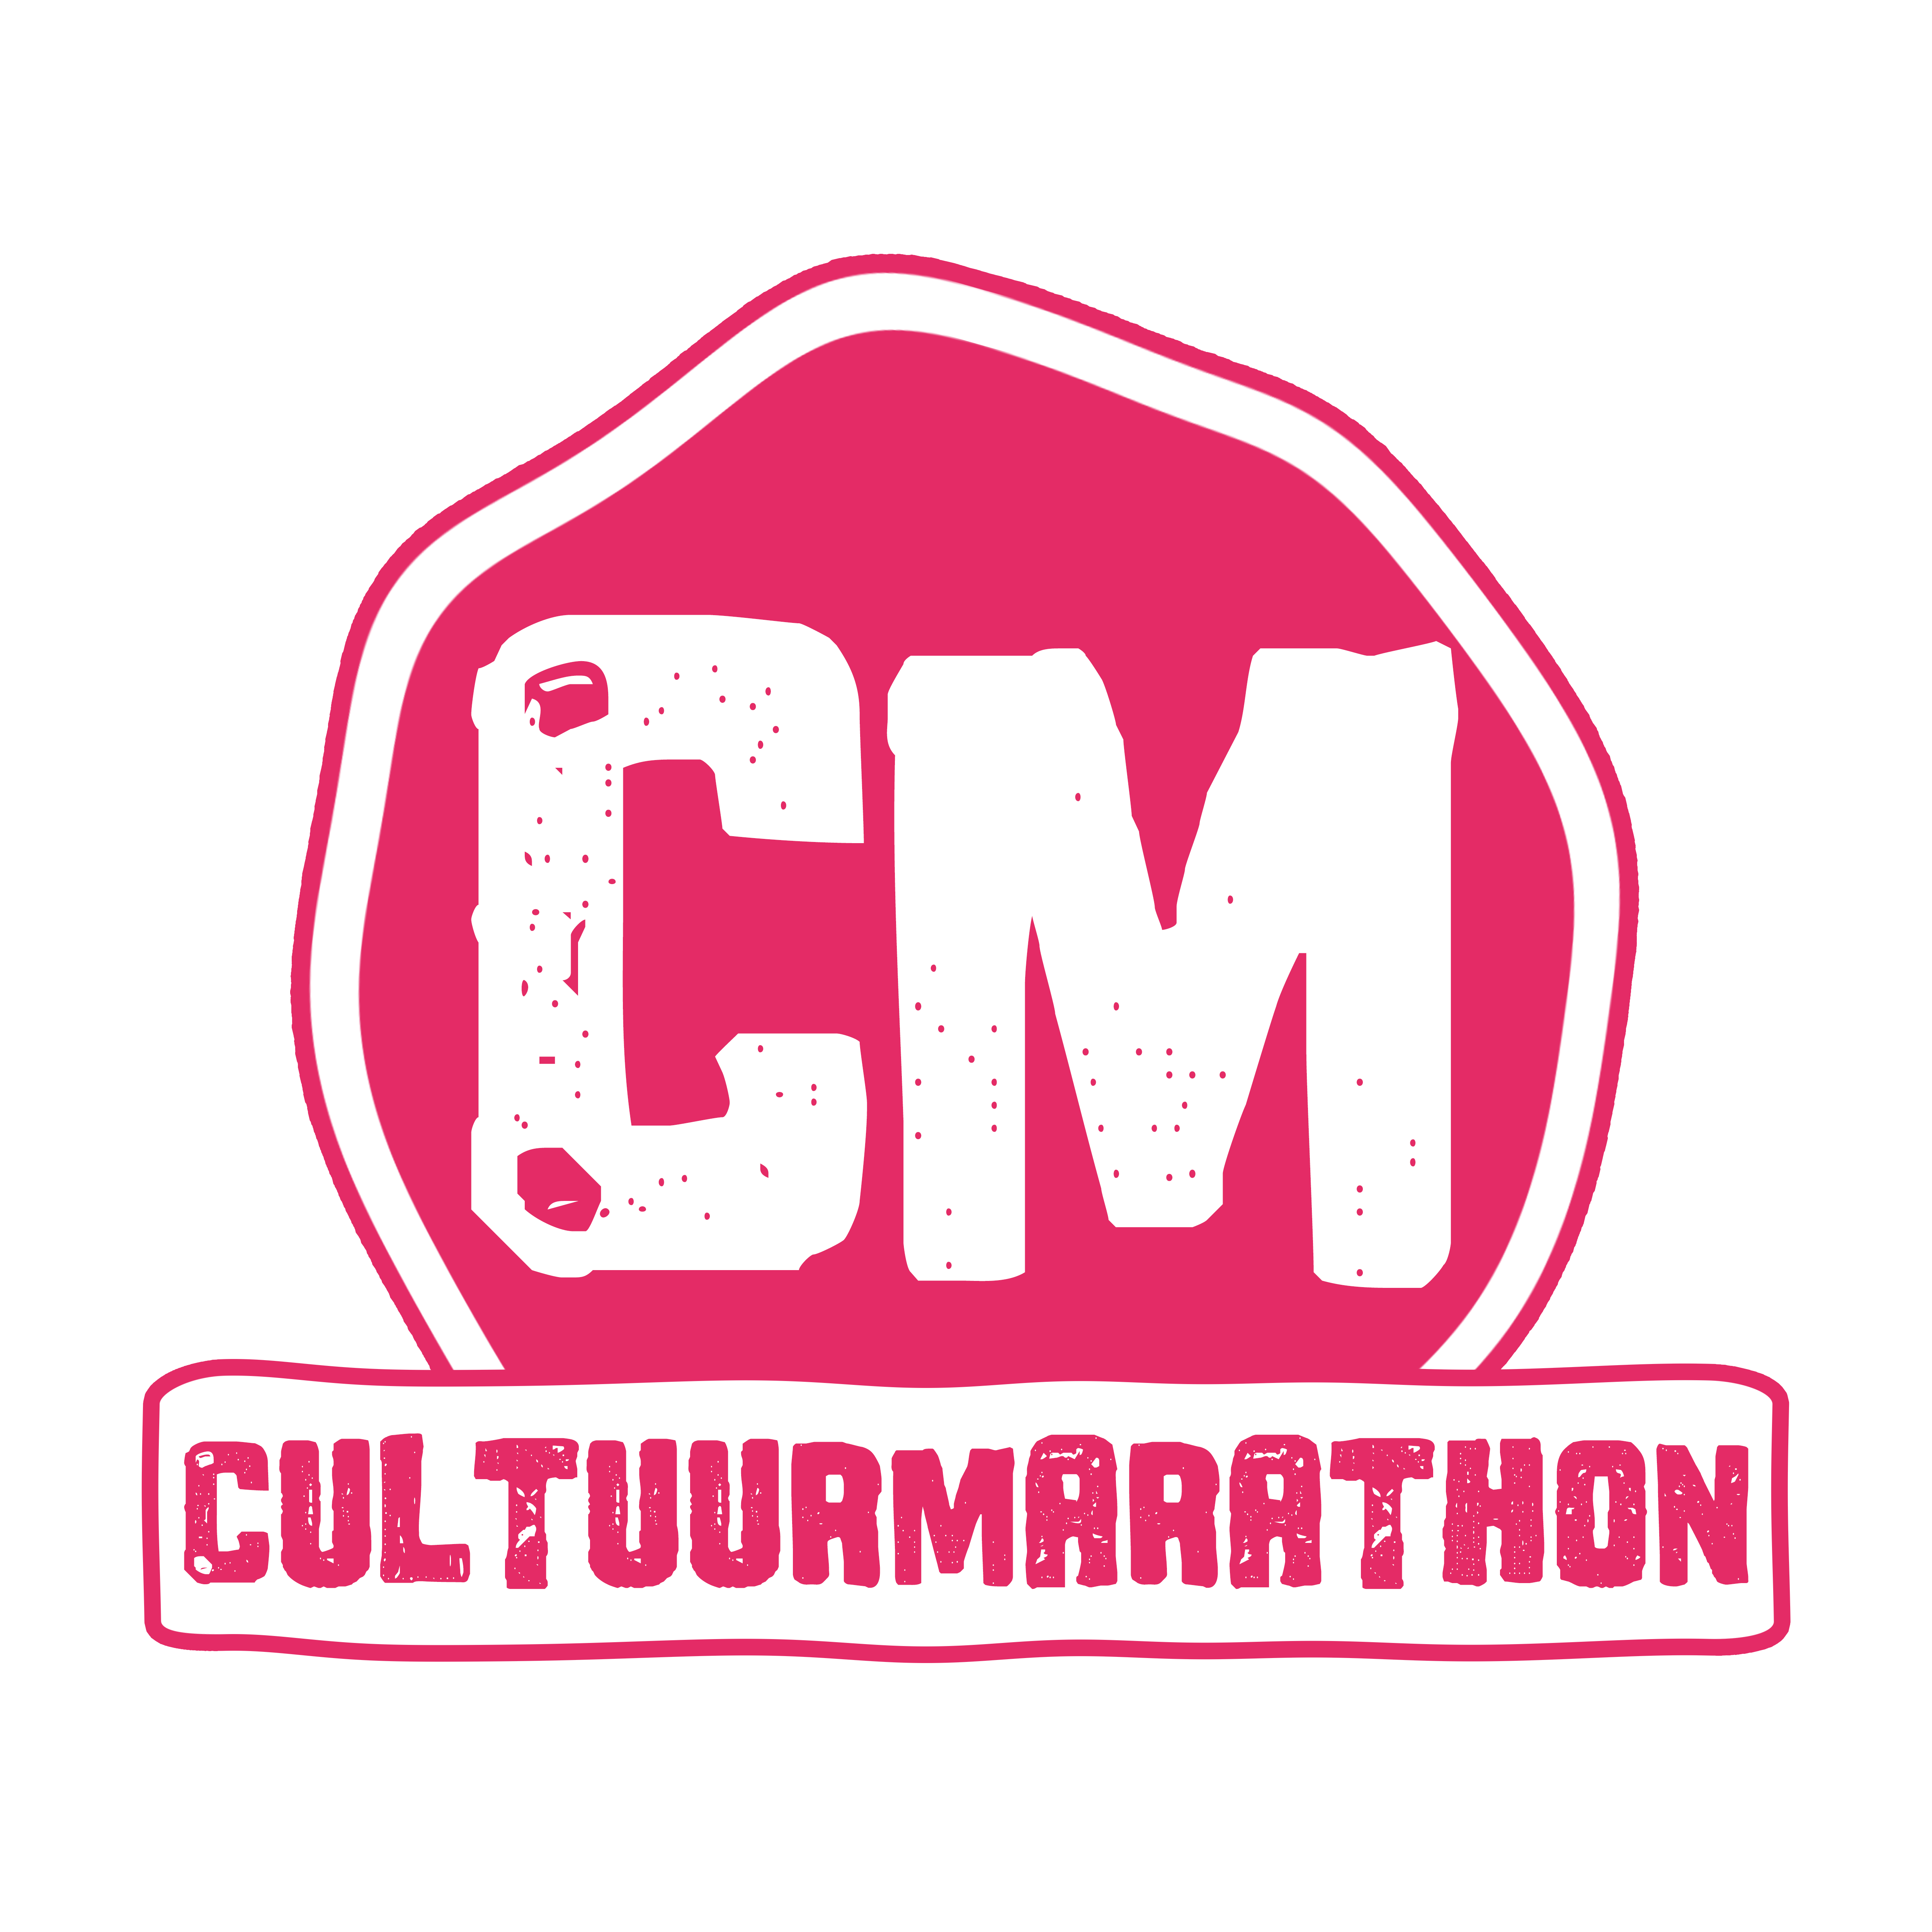 Cultuurmarathon